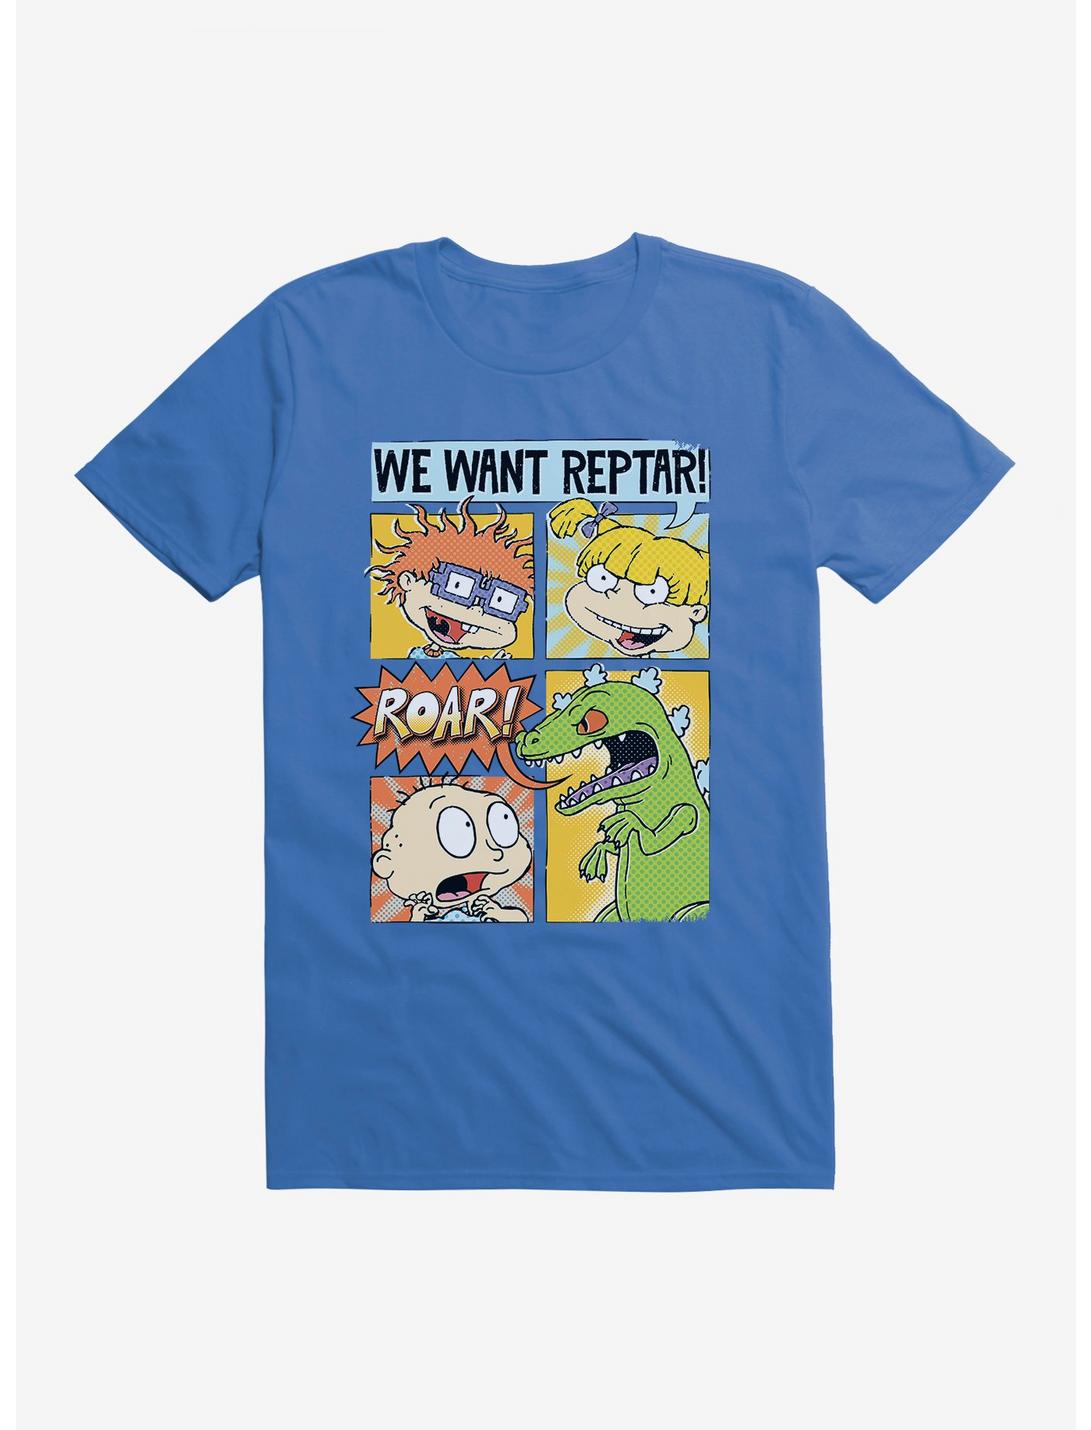 Rugrats We Want Reptar T-Shirt, ROYAL BLUE, hi-res